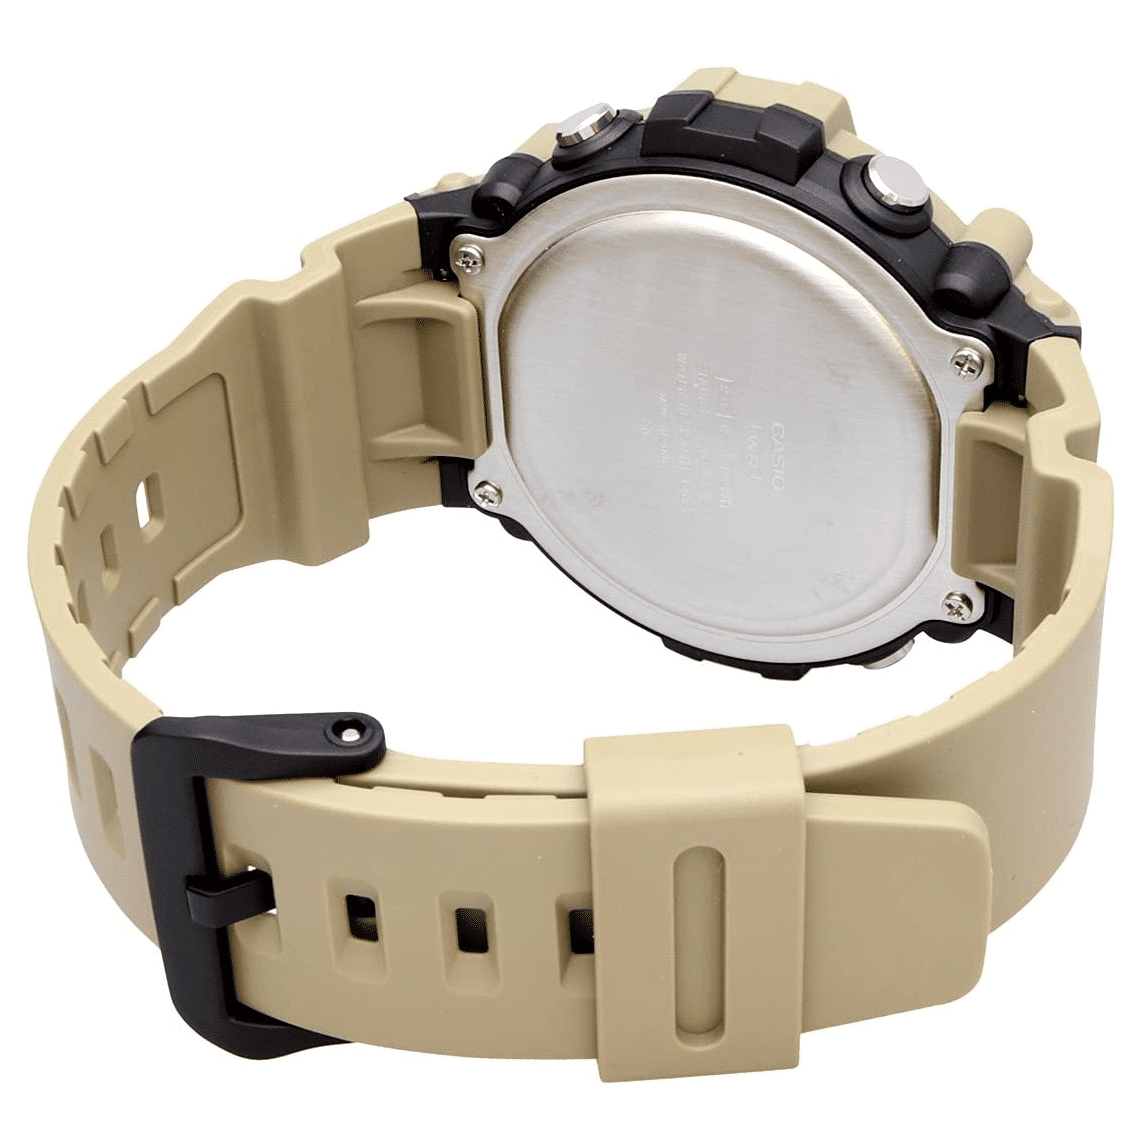 Los mejores relojes Casio G-Shock militares y de camuflaje